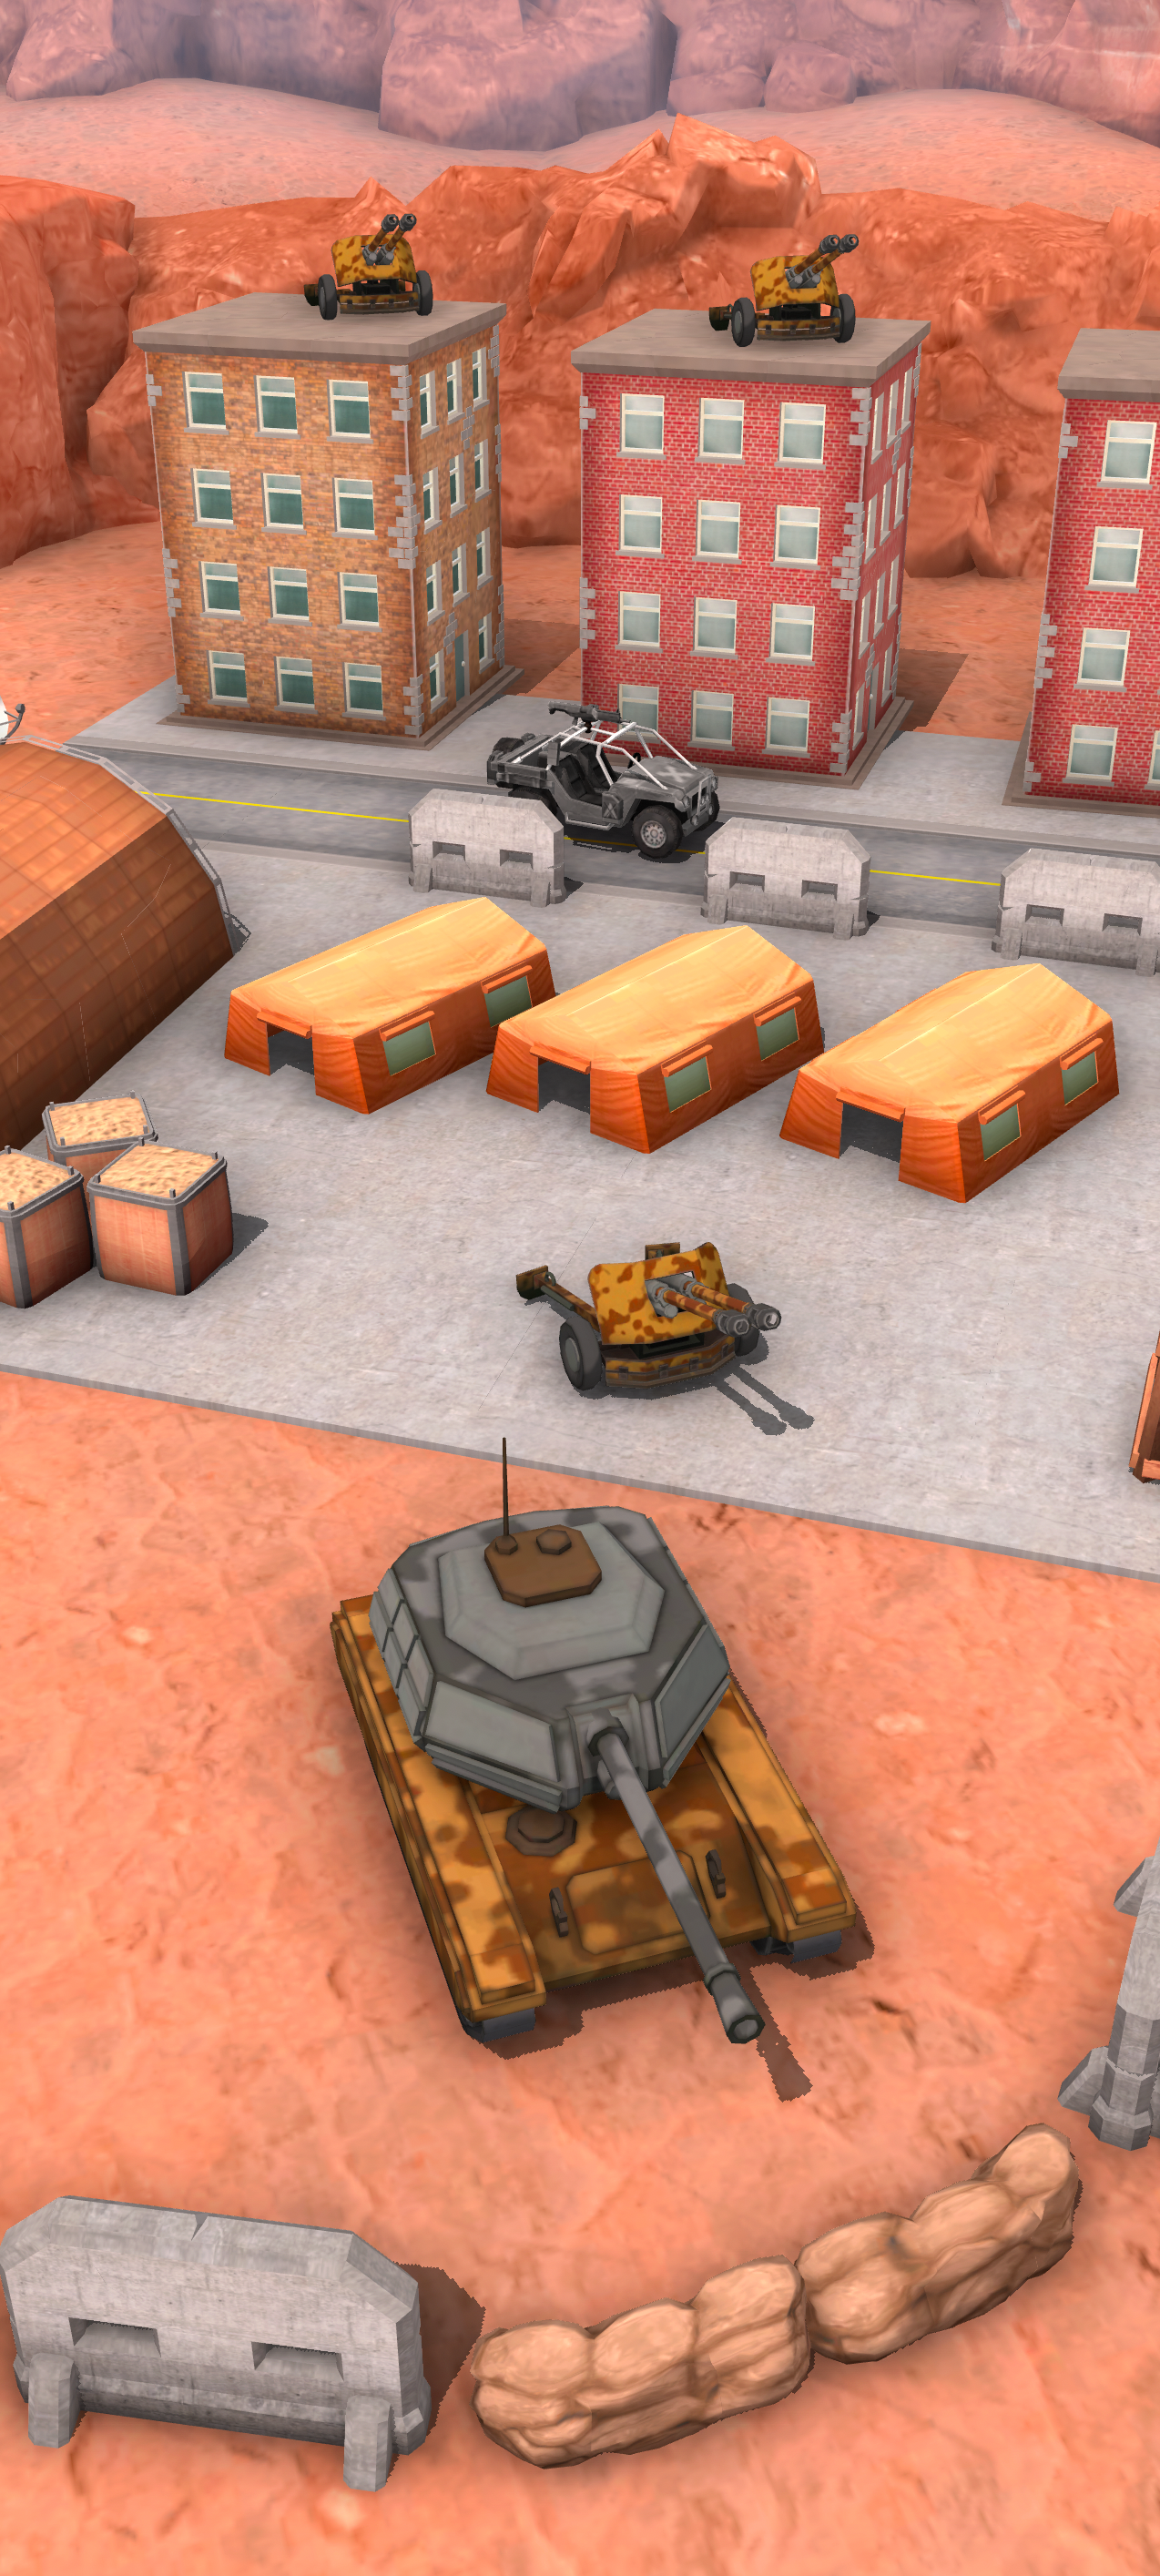 Screenshot of World Of Artillery